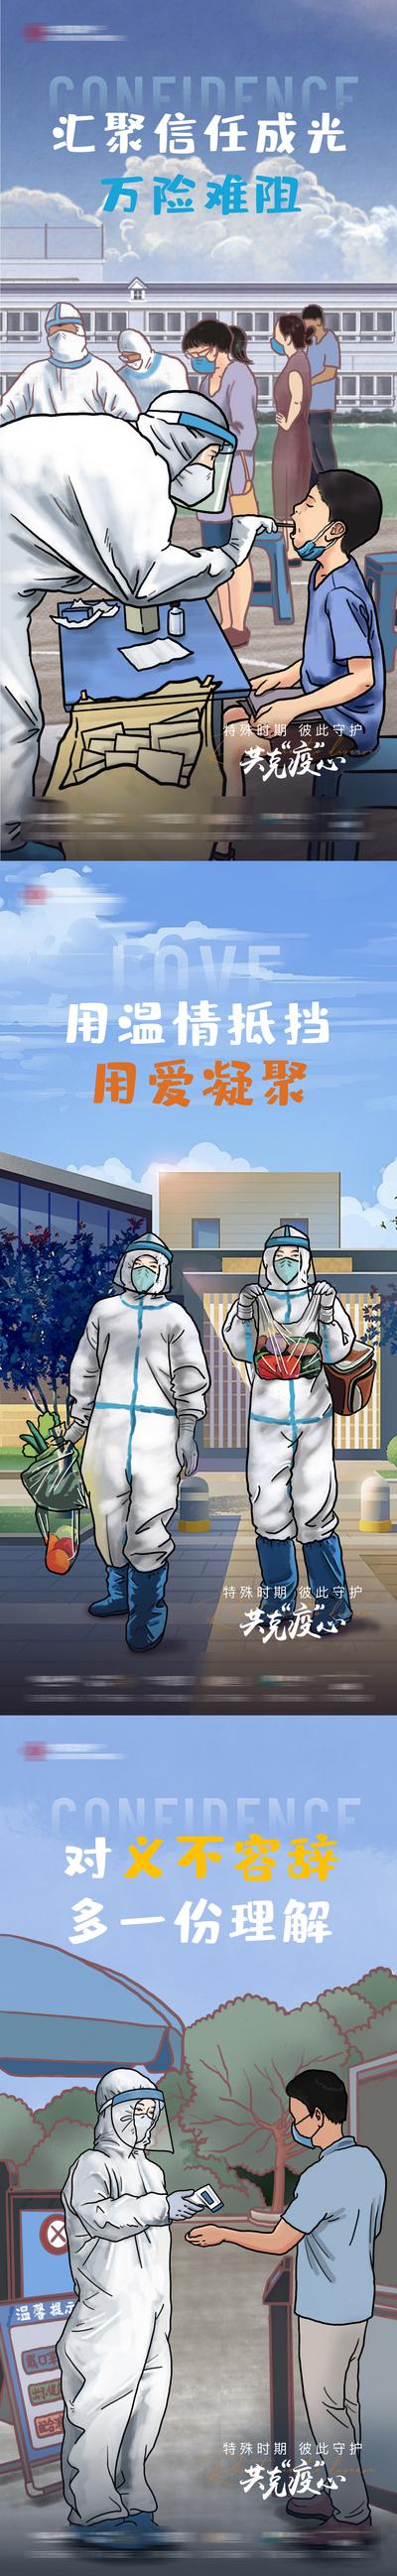 南门网 疫情抗疫插画微信系列海报